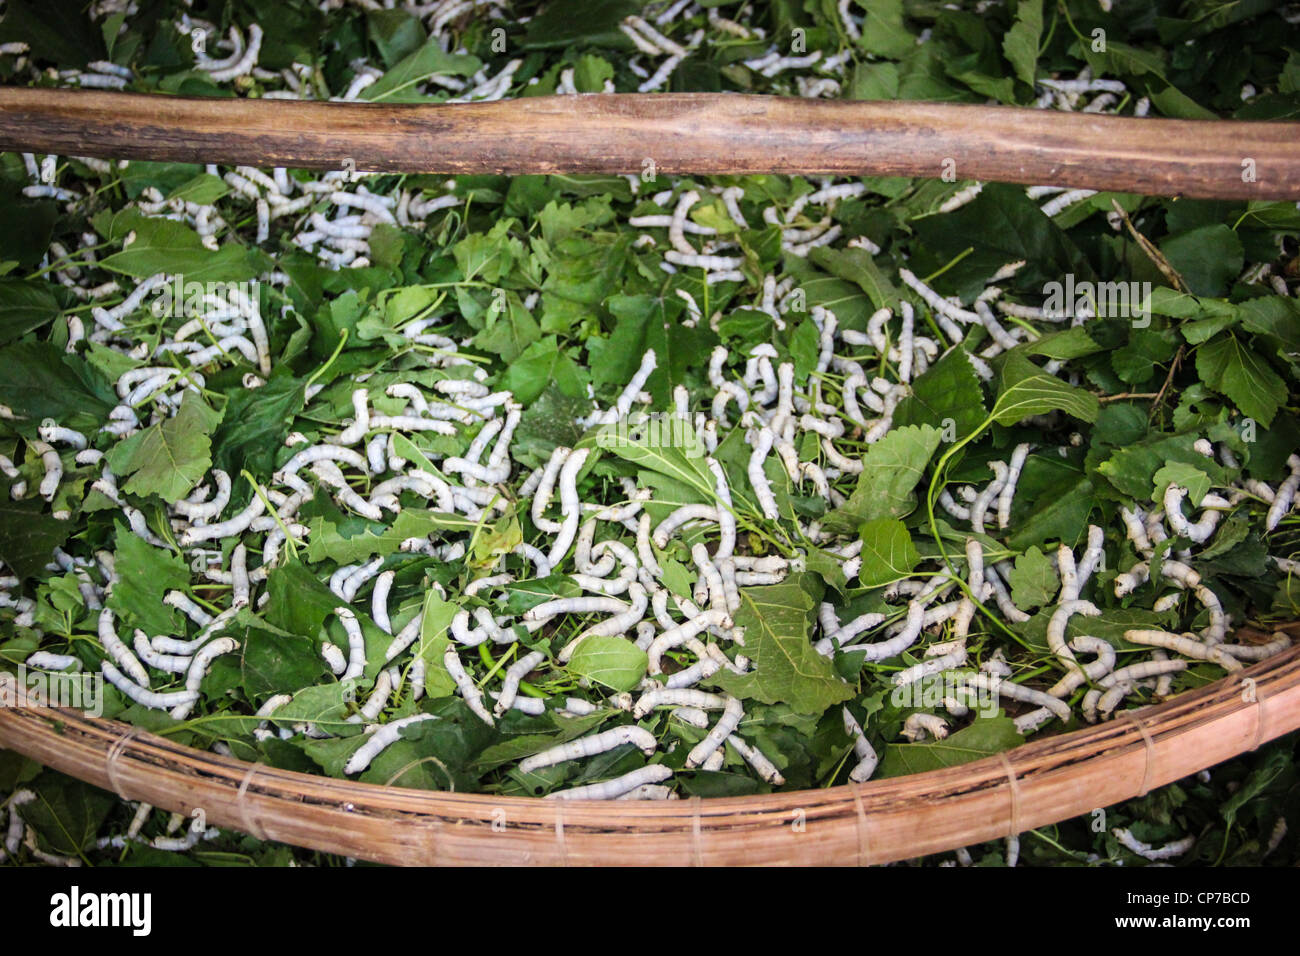 Cinquième stade de larves de vers à soie feuilles de mûrier - Fabrique de soie à Hoi An - Vietnam Banque D'Images